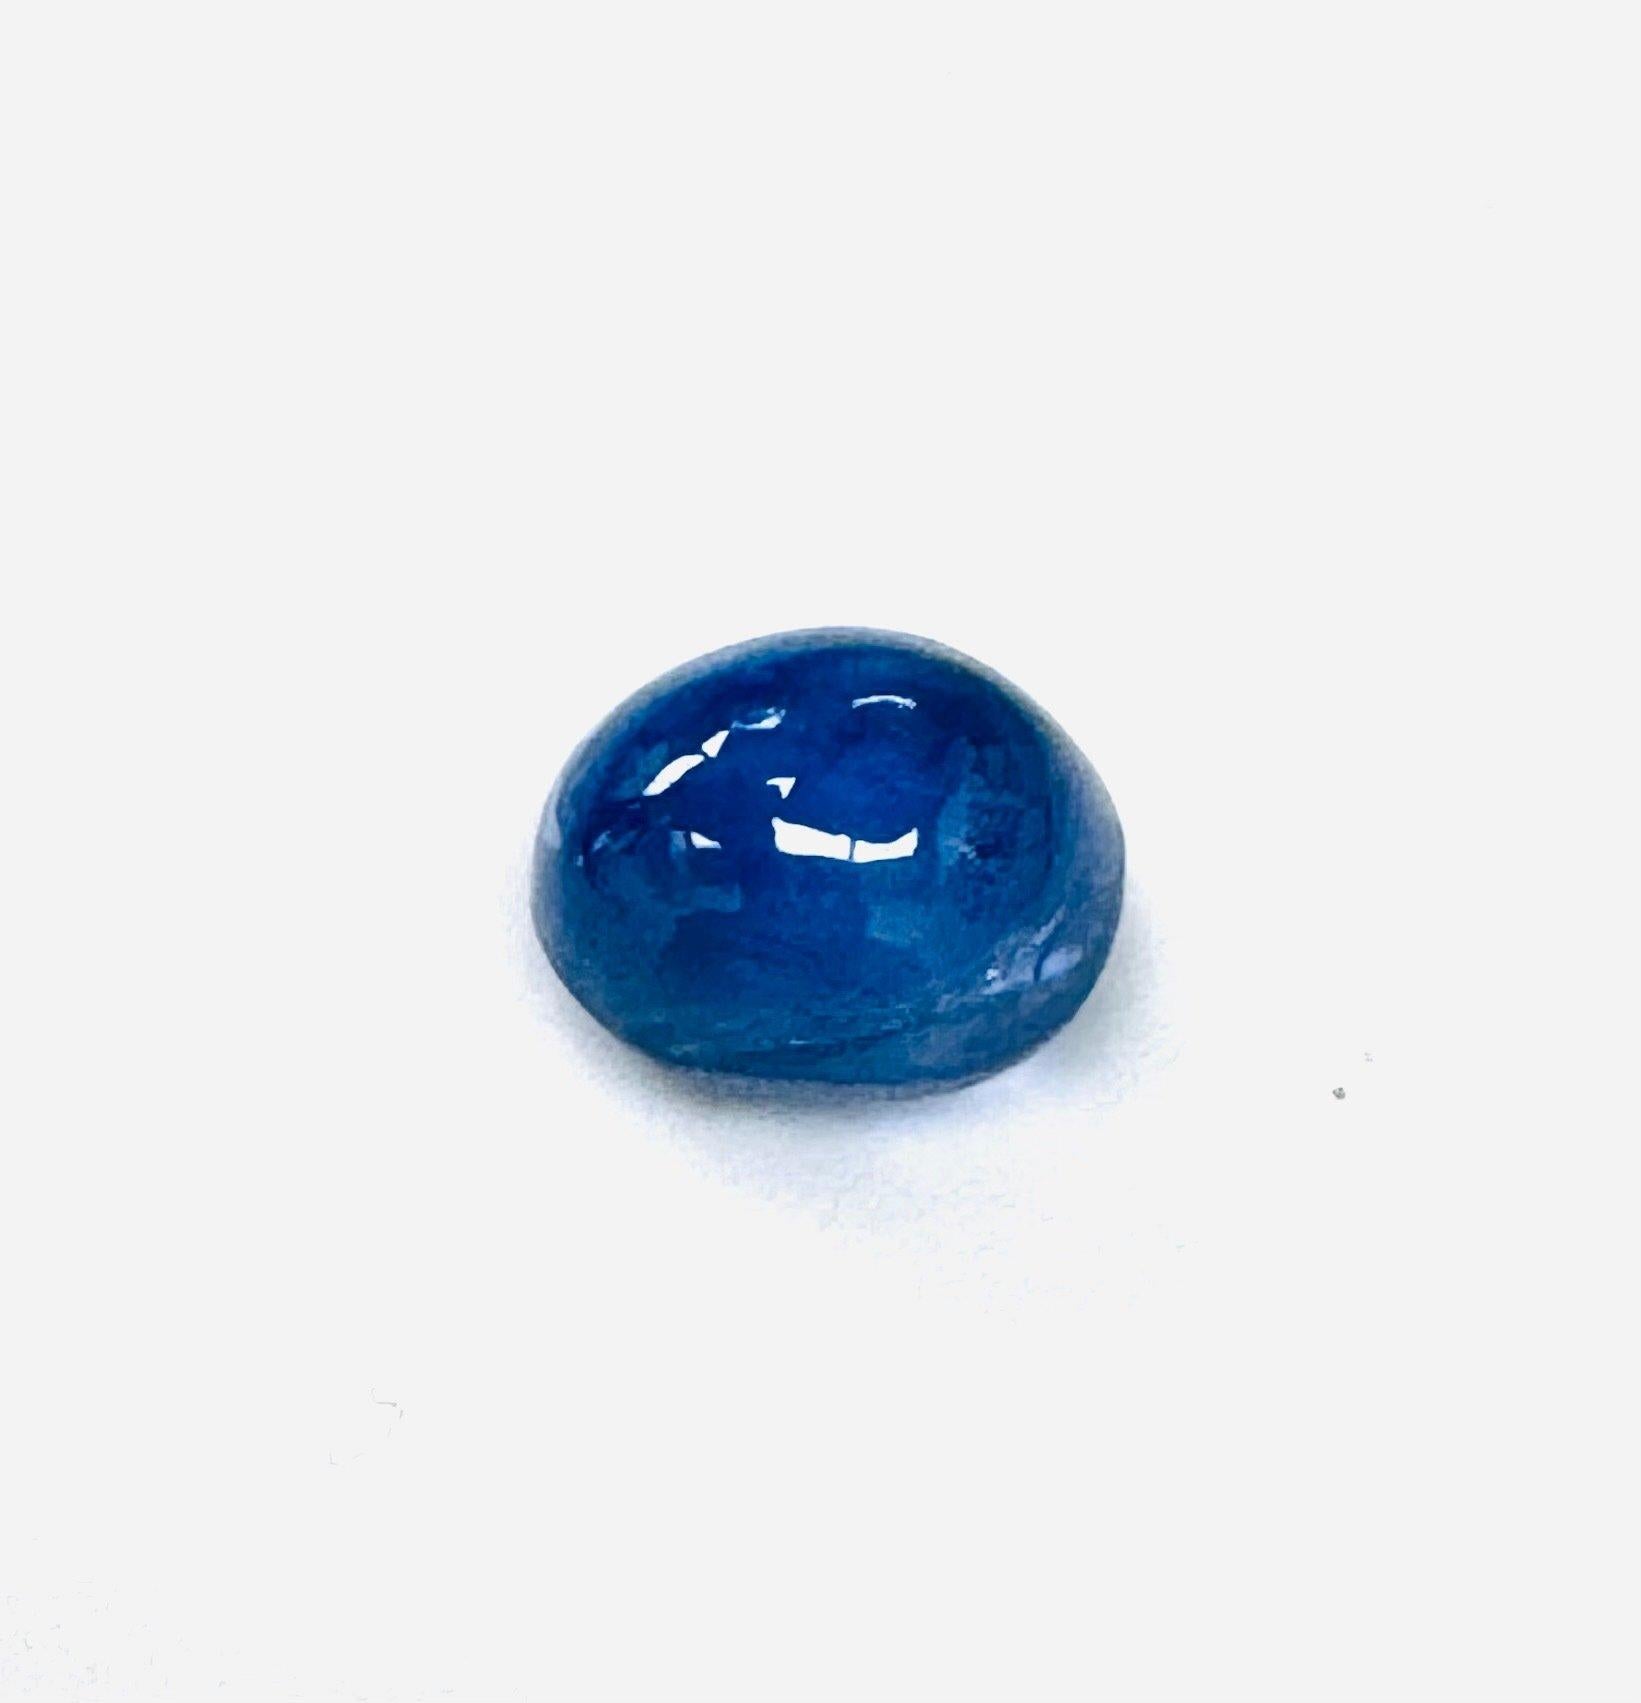 Fascinante pierre précieuse saphir 10,27 carats, certifiée IGI 

Merveille époustouflante de la Nature, ce saphir de 10,27 incarne la beauté sereine avec sa teinte bleu clair enchanteresse. Pour une protection maximale et une tranquillité d'esprit,